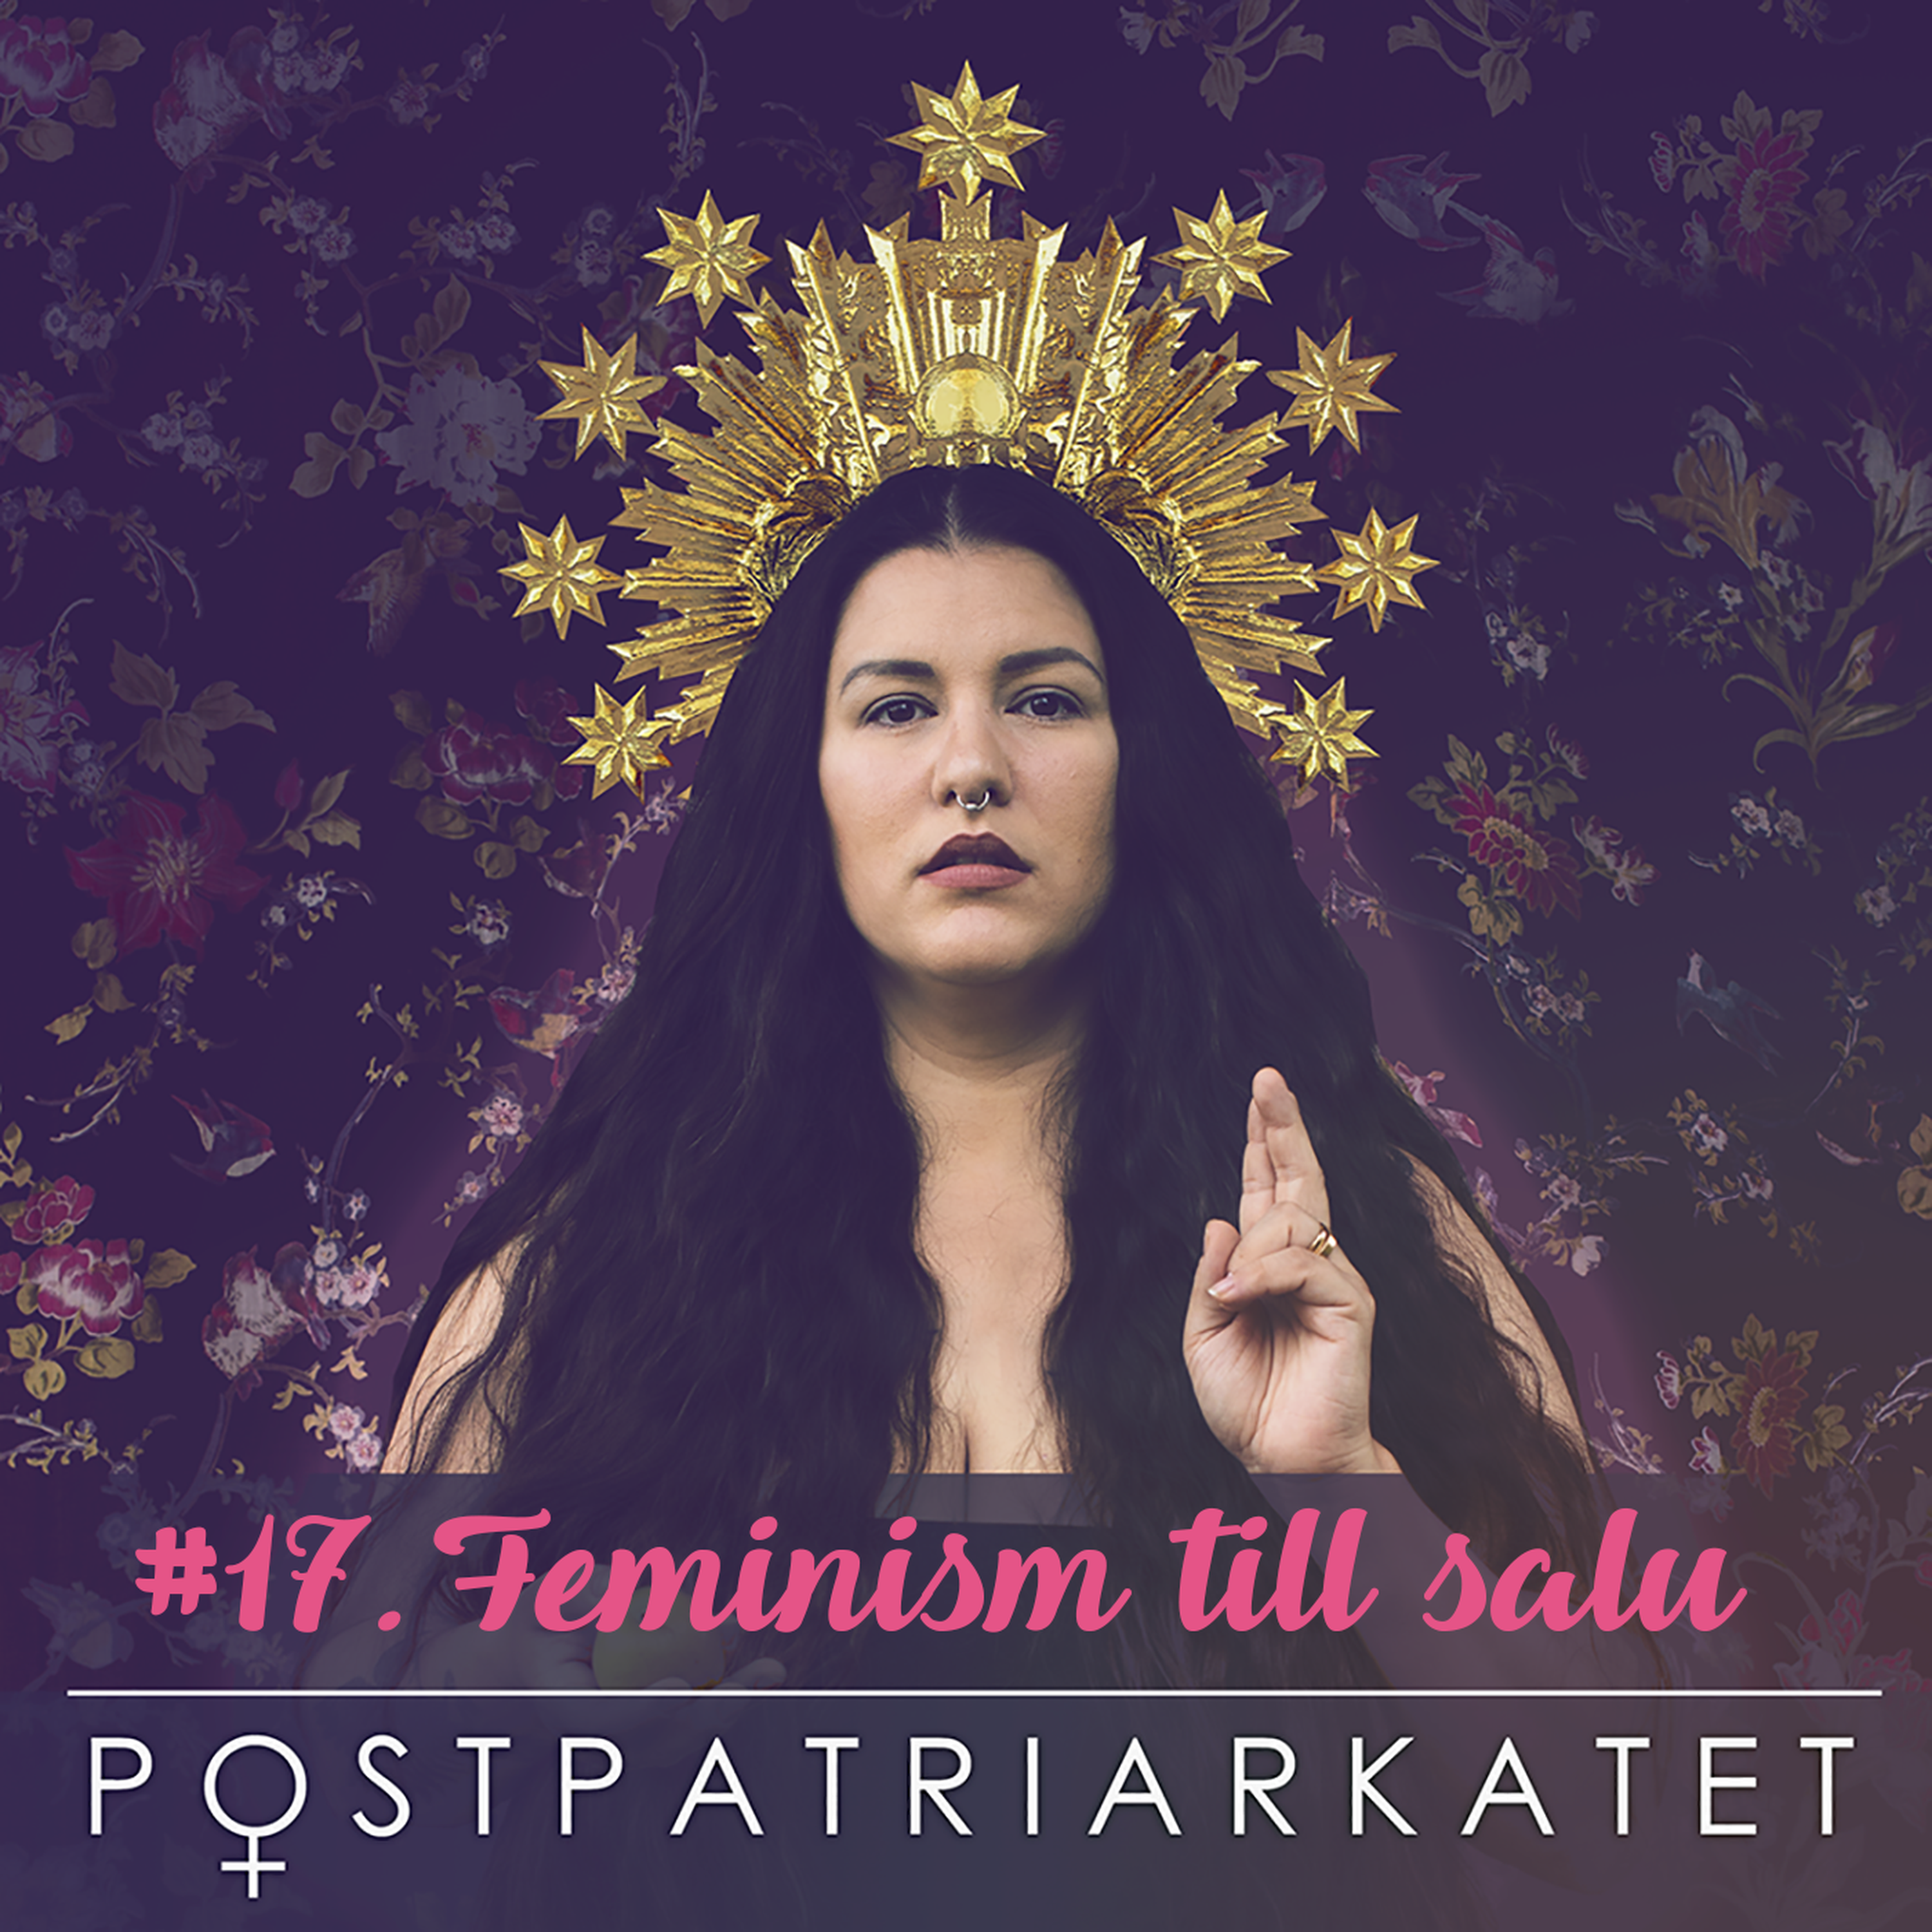 Feminism till salu - #17